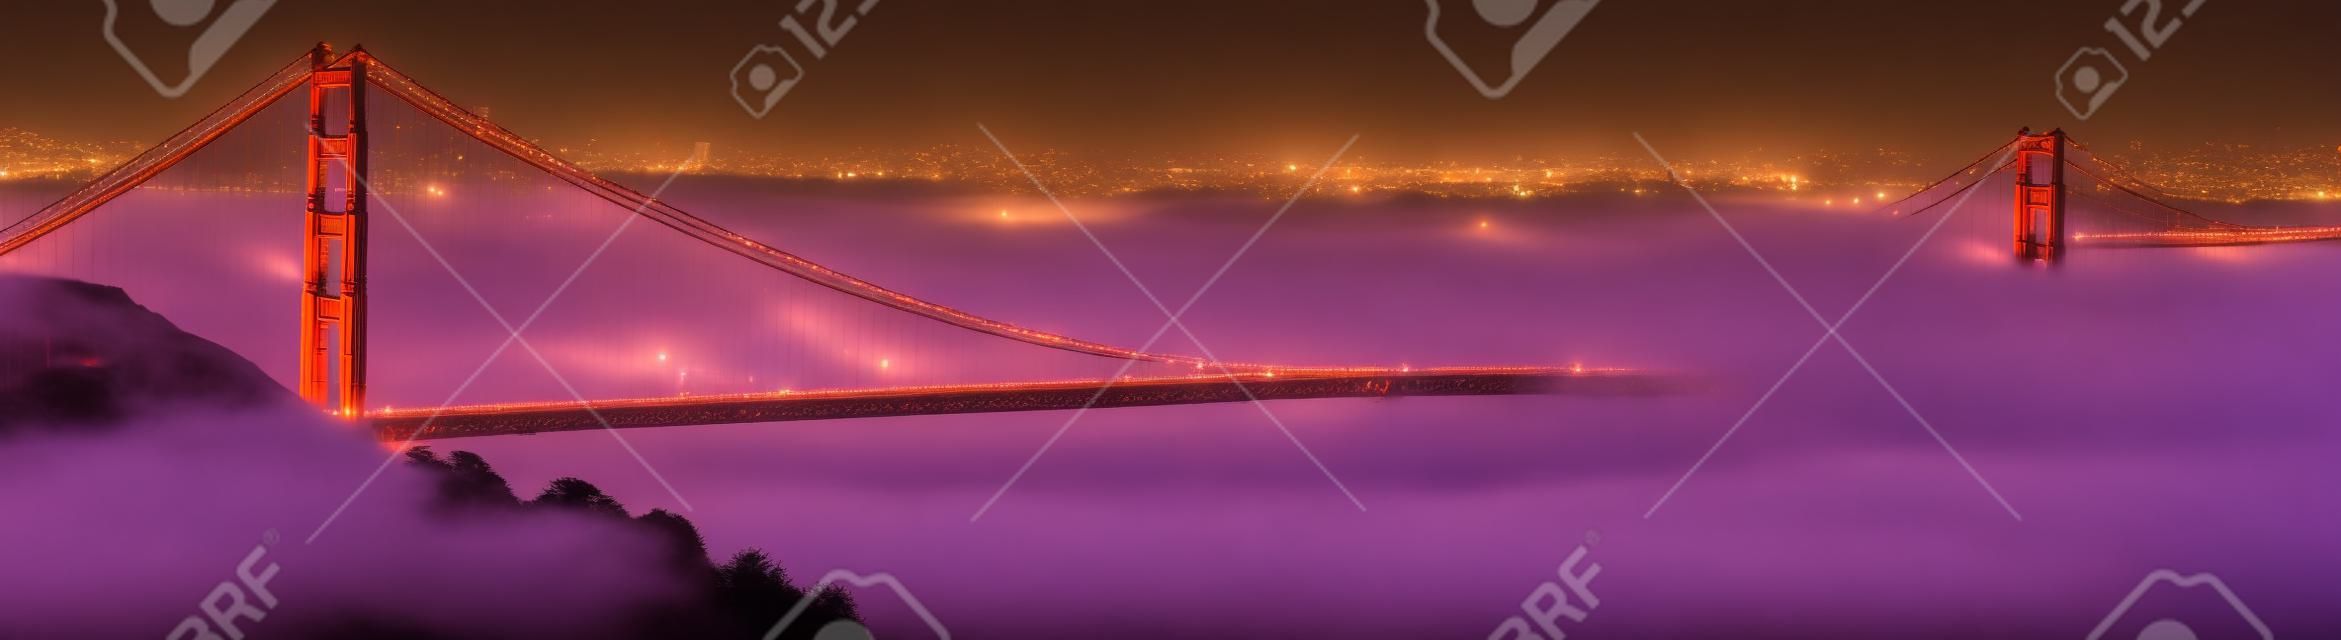 Nebel rollt die Golden Gate Bridge bei Dämmerung. Die Stadt von San Francisco ist im Hintergrund. Panorama Zusammensetzung.